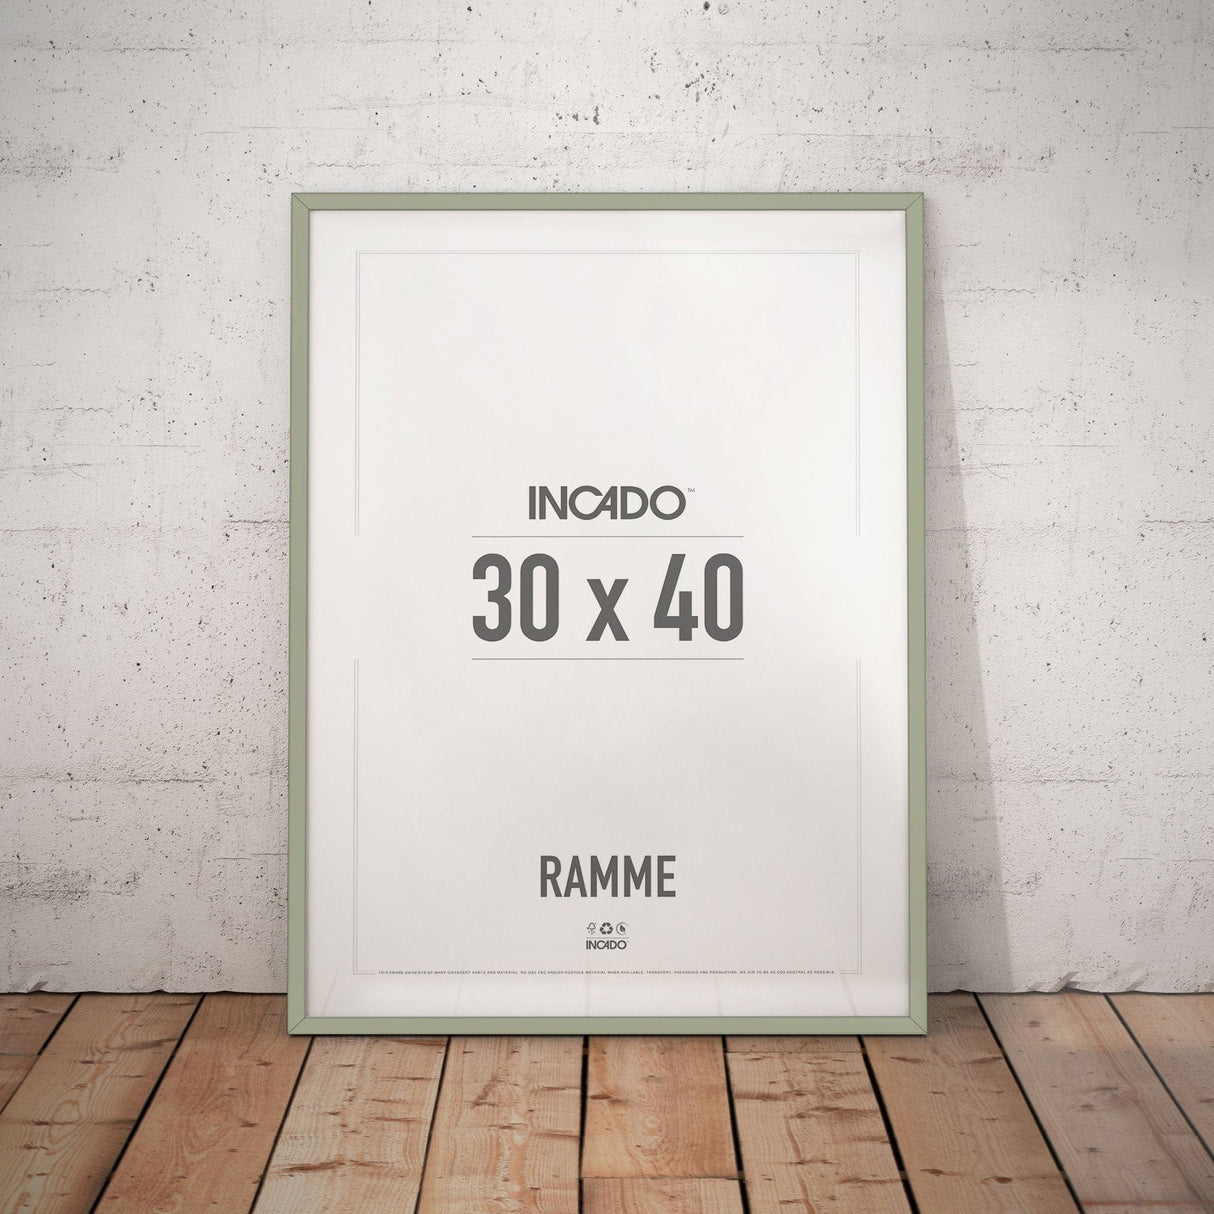 Peppermint Grøn Ramme - Incado NordicLine - 30 x 40 cm